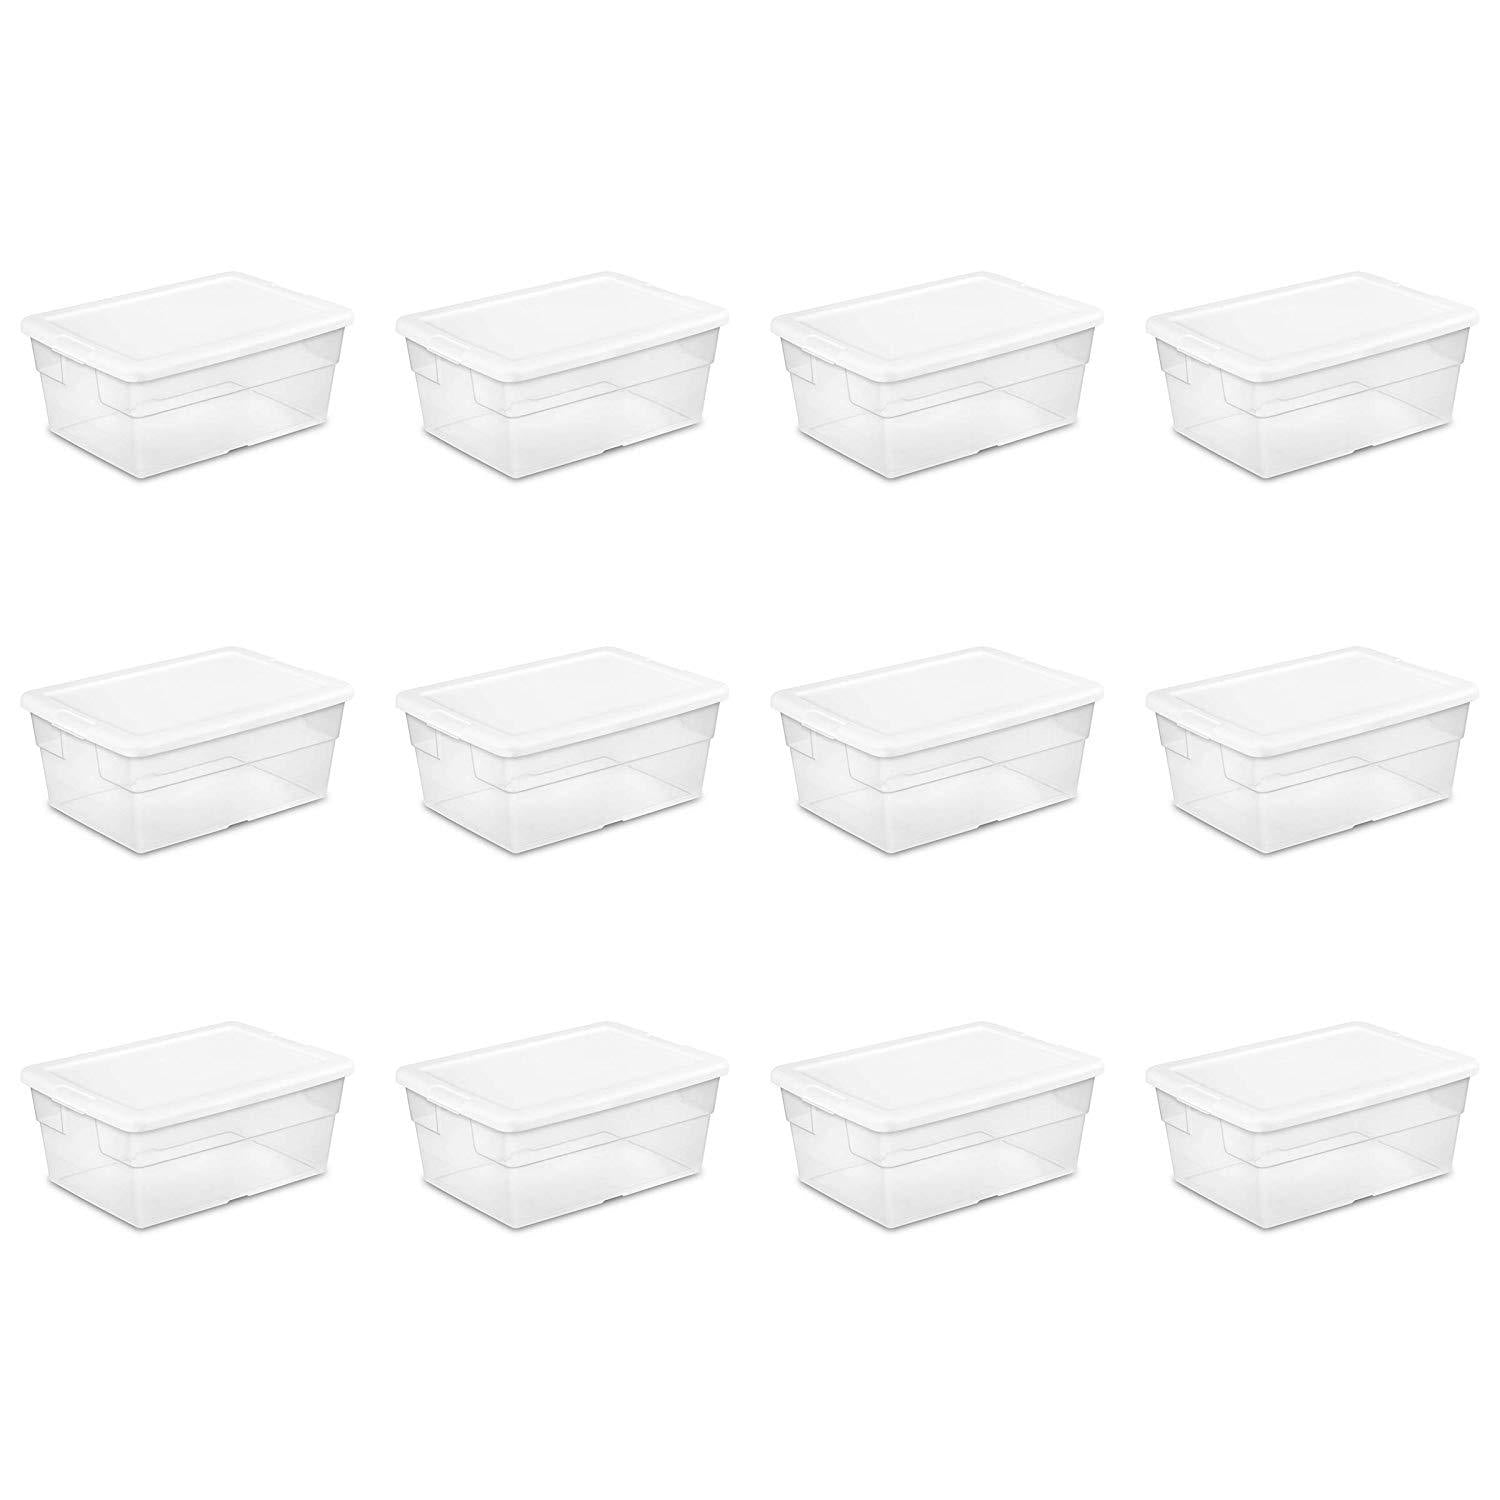 Plastic Shoe Boxes - 16 x 12 x 7, 16 Quarts